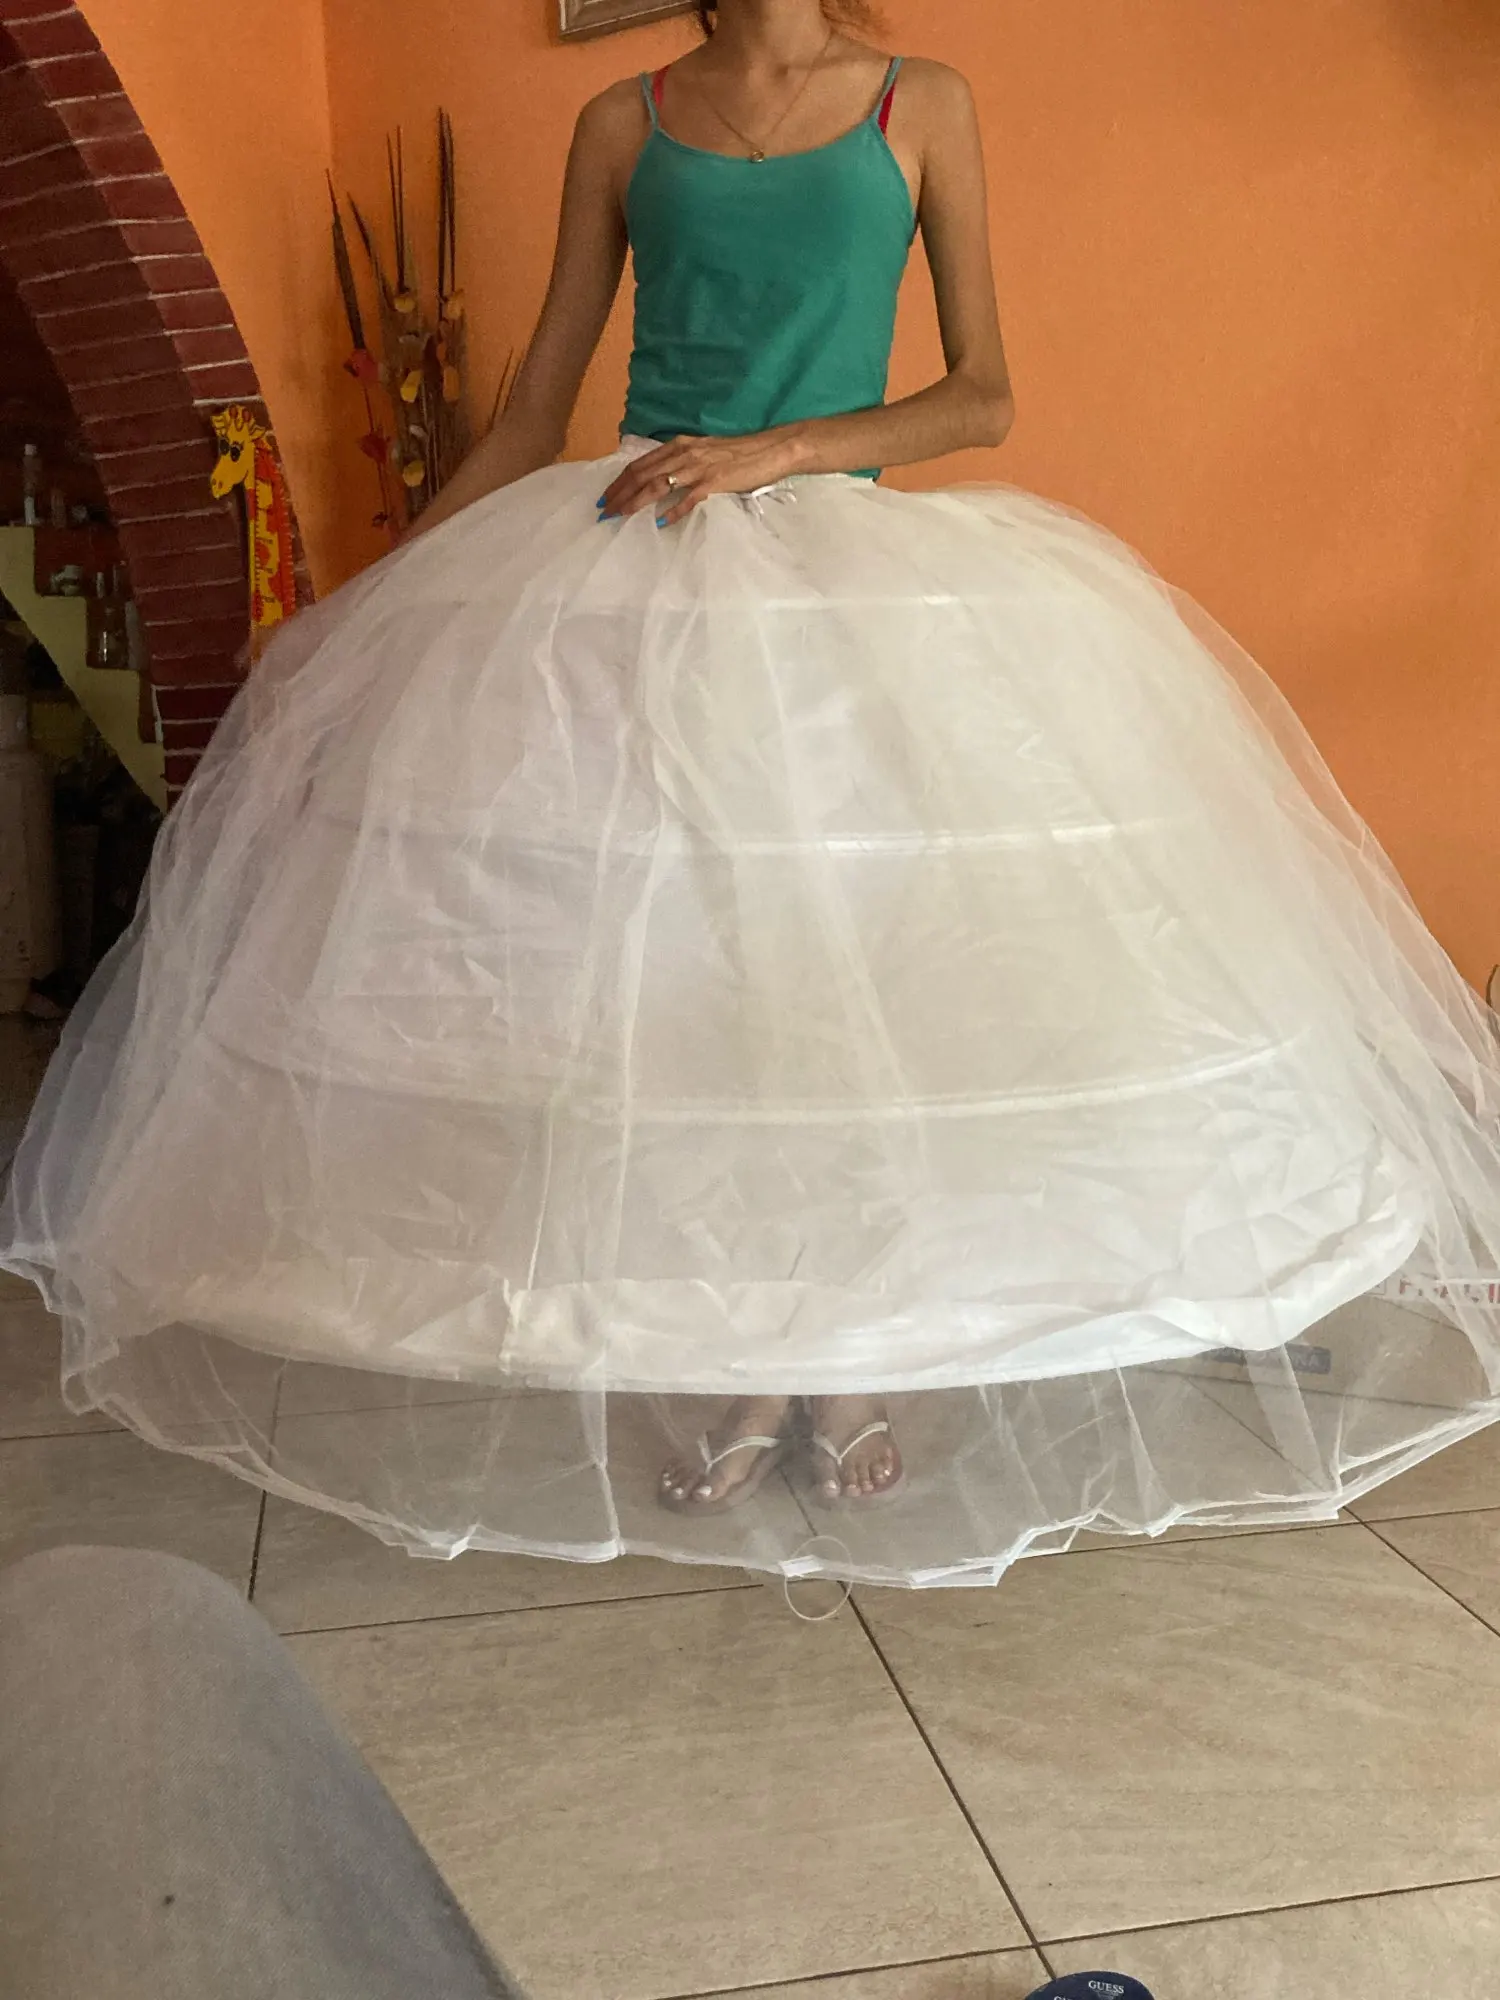 New Hot Sell 3 Hoops Big White Petticoat Super Fluffy Crinoline Slip Underskirt For Wedding Dress Bridal Gown In Stock